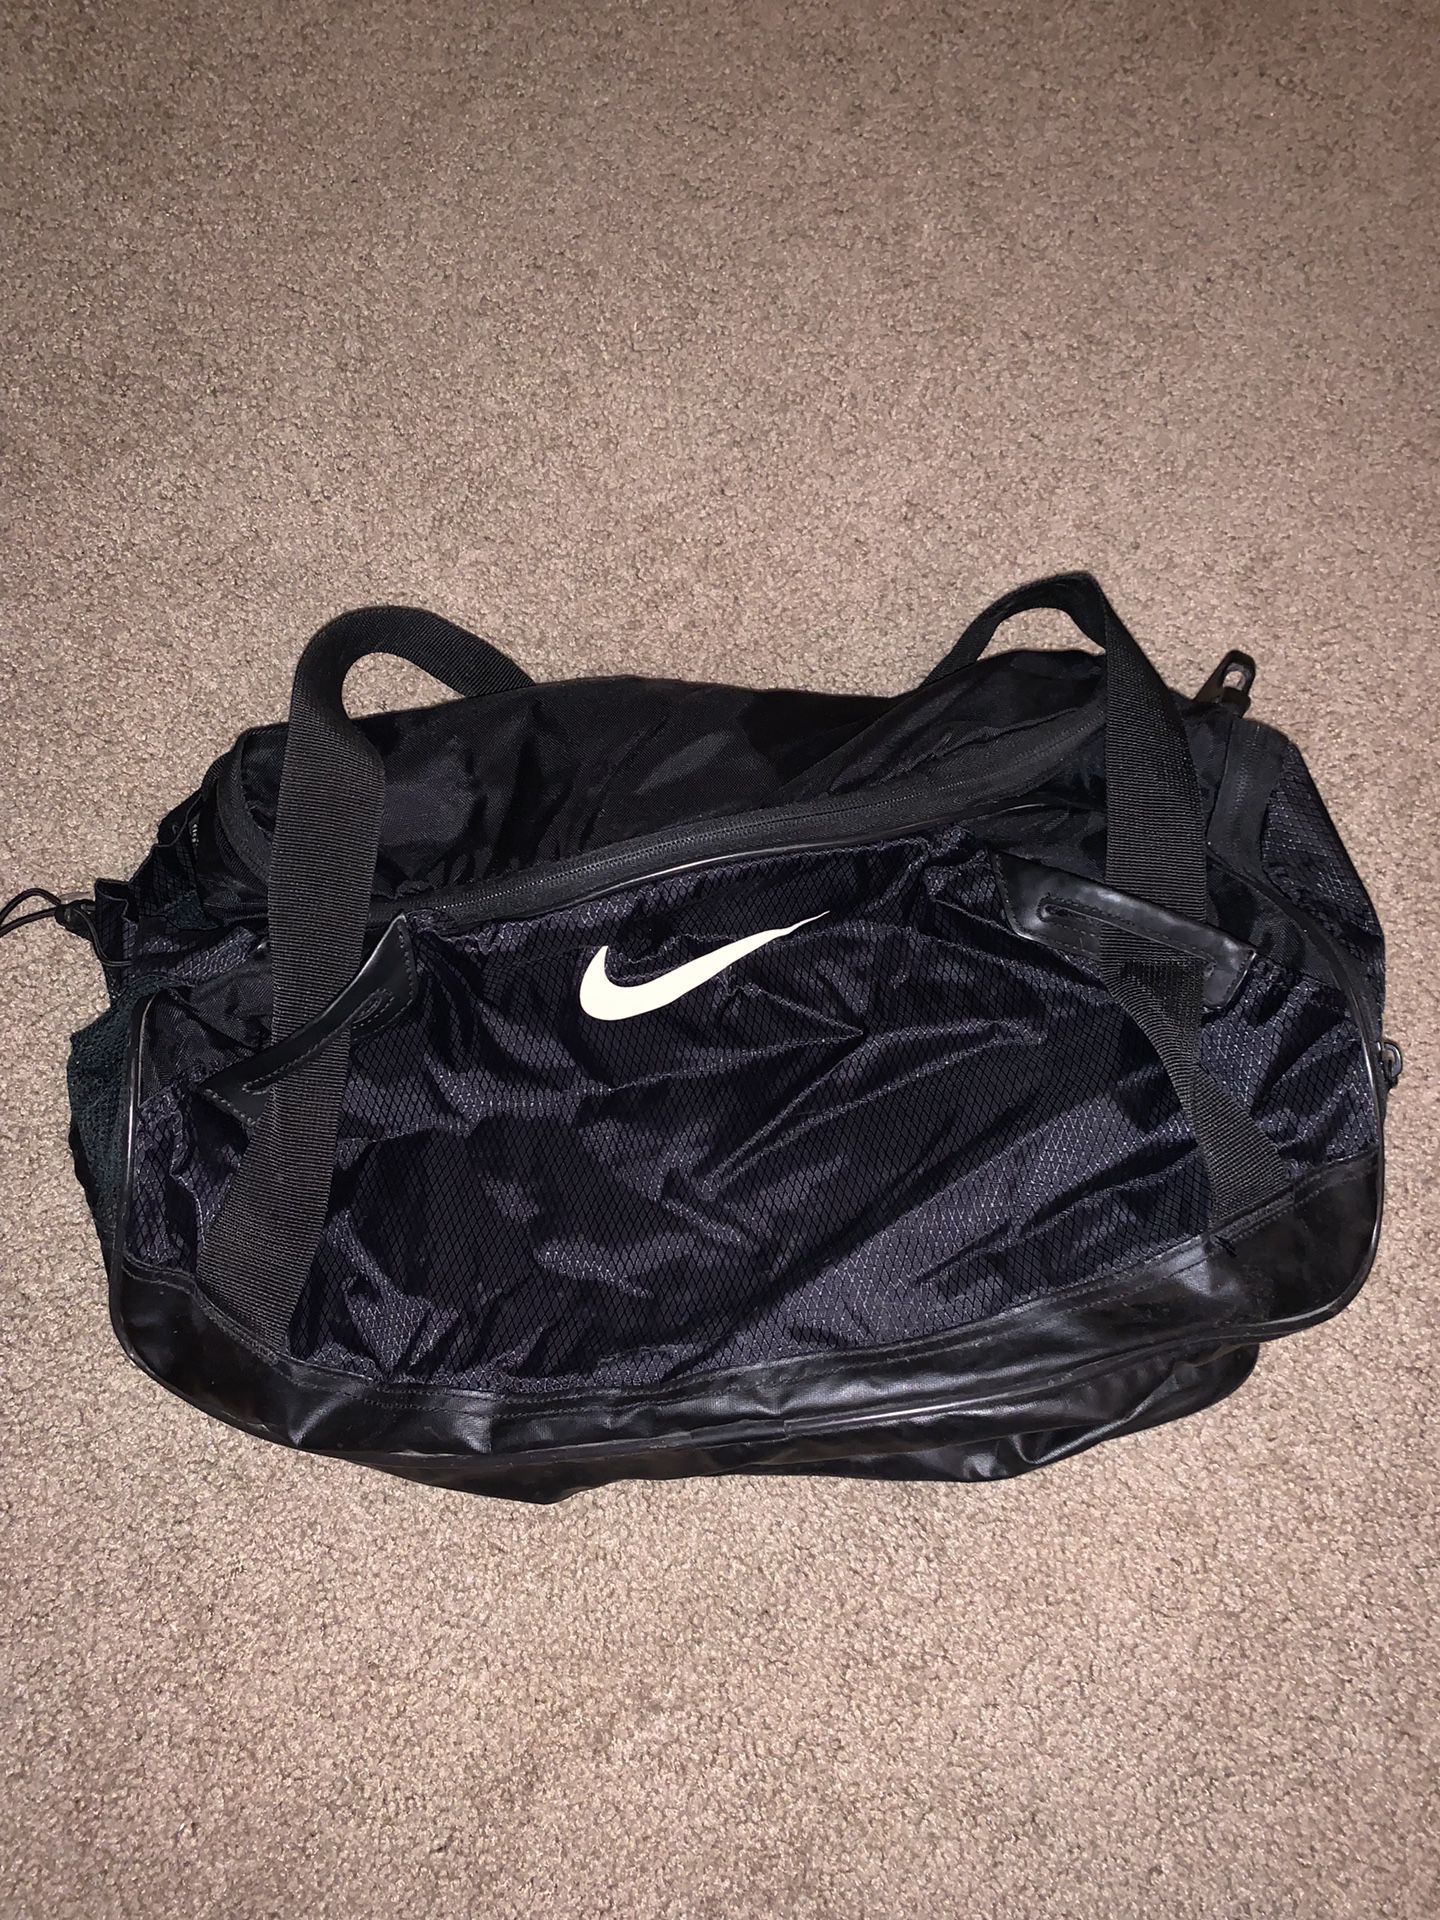 Nike Gym Travel Black Small Duffle Bag